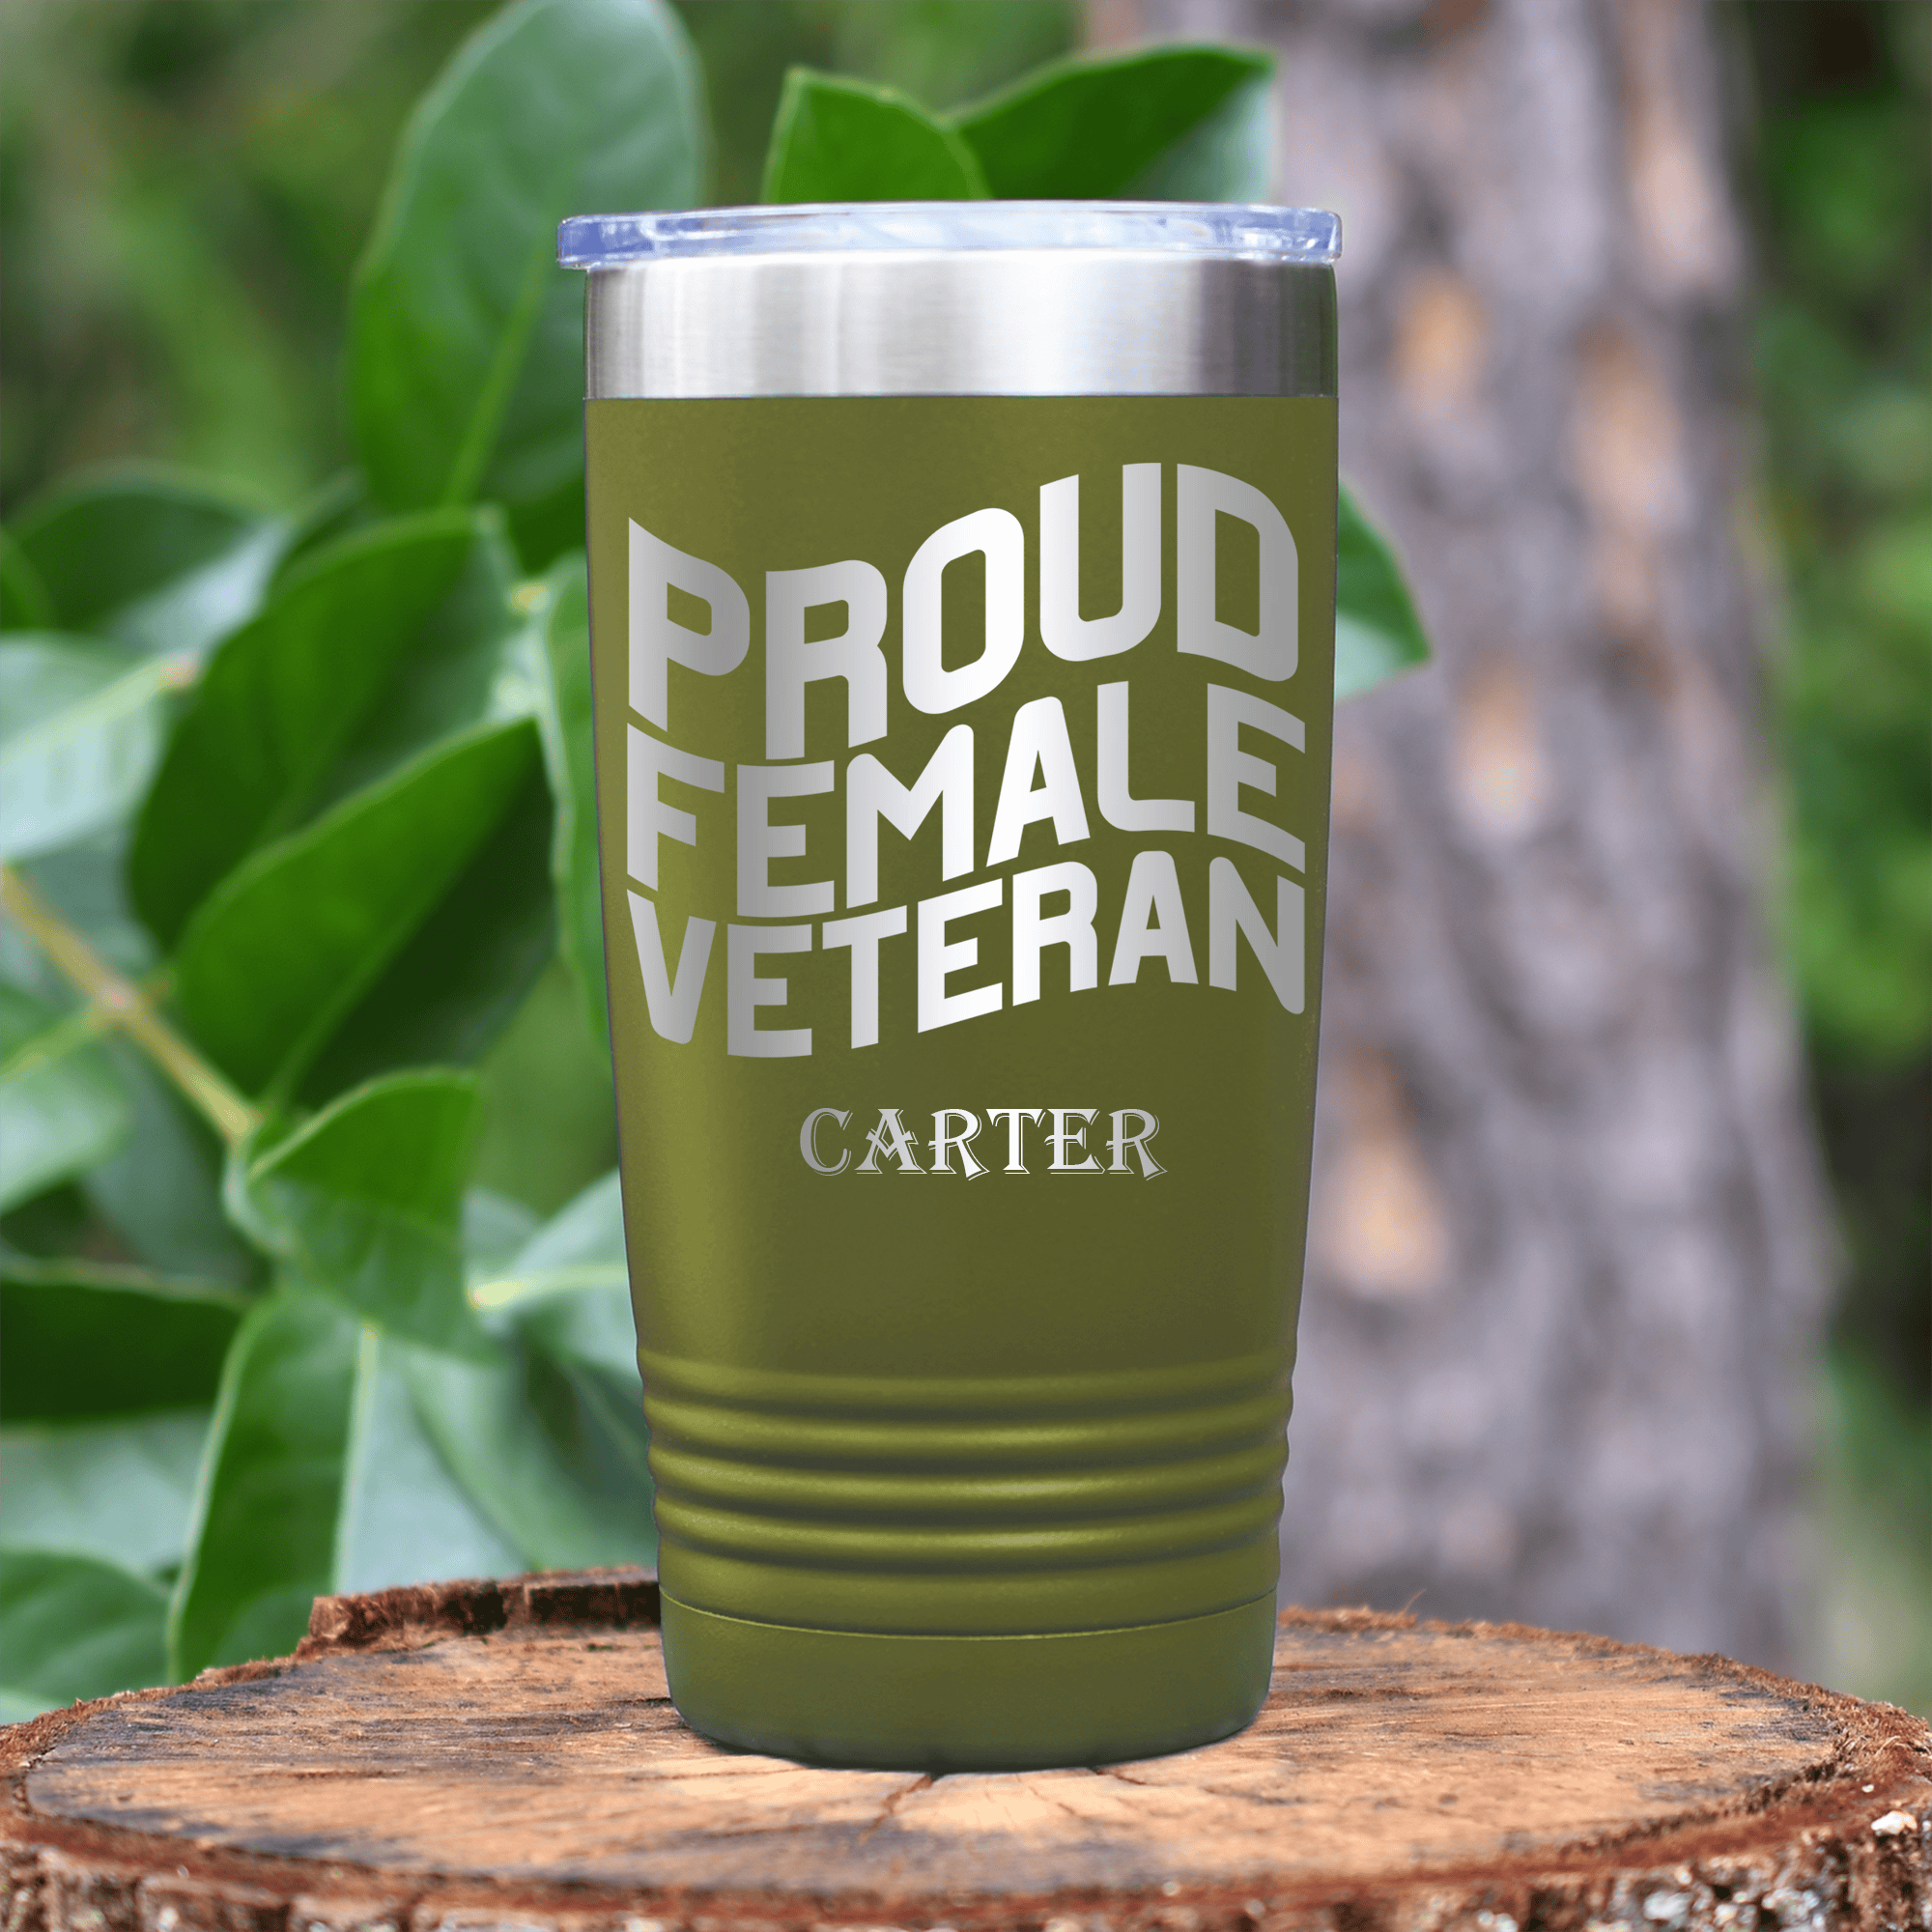 Military Green Veteran Tumbler With Proud Female Veteran Design